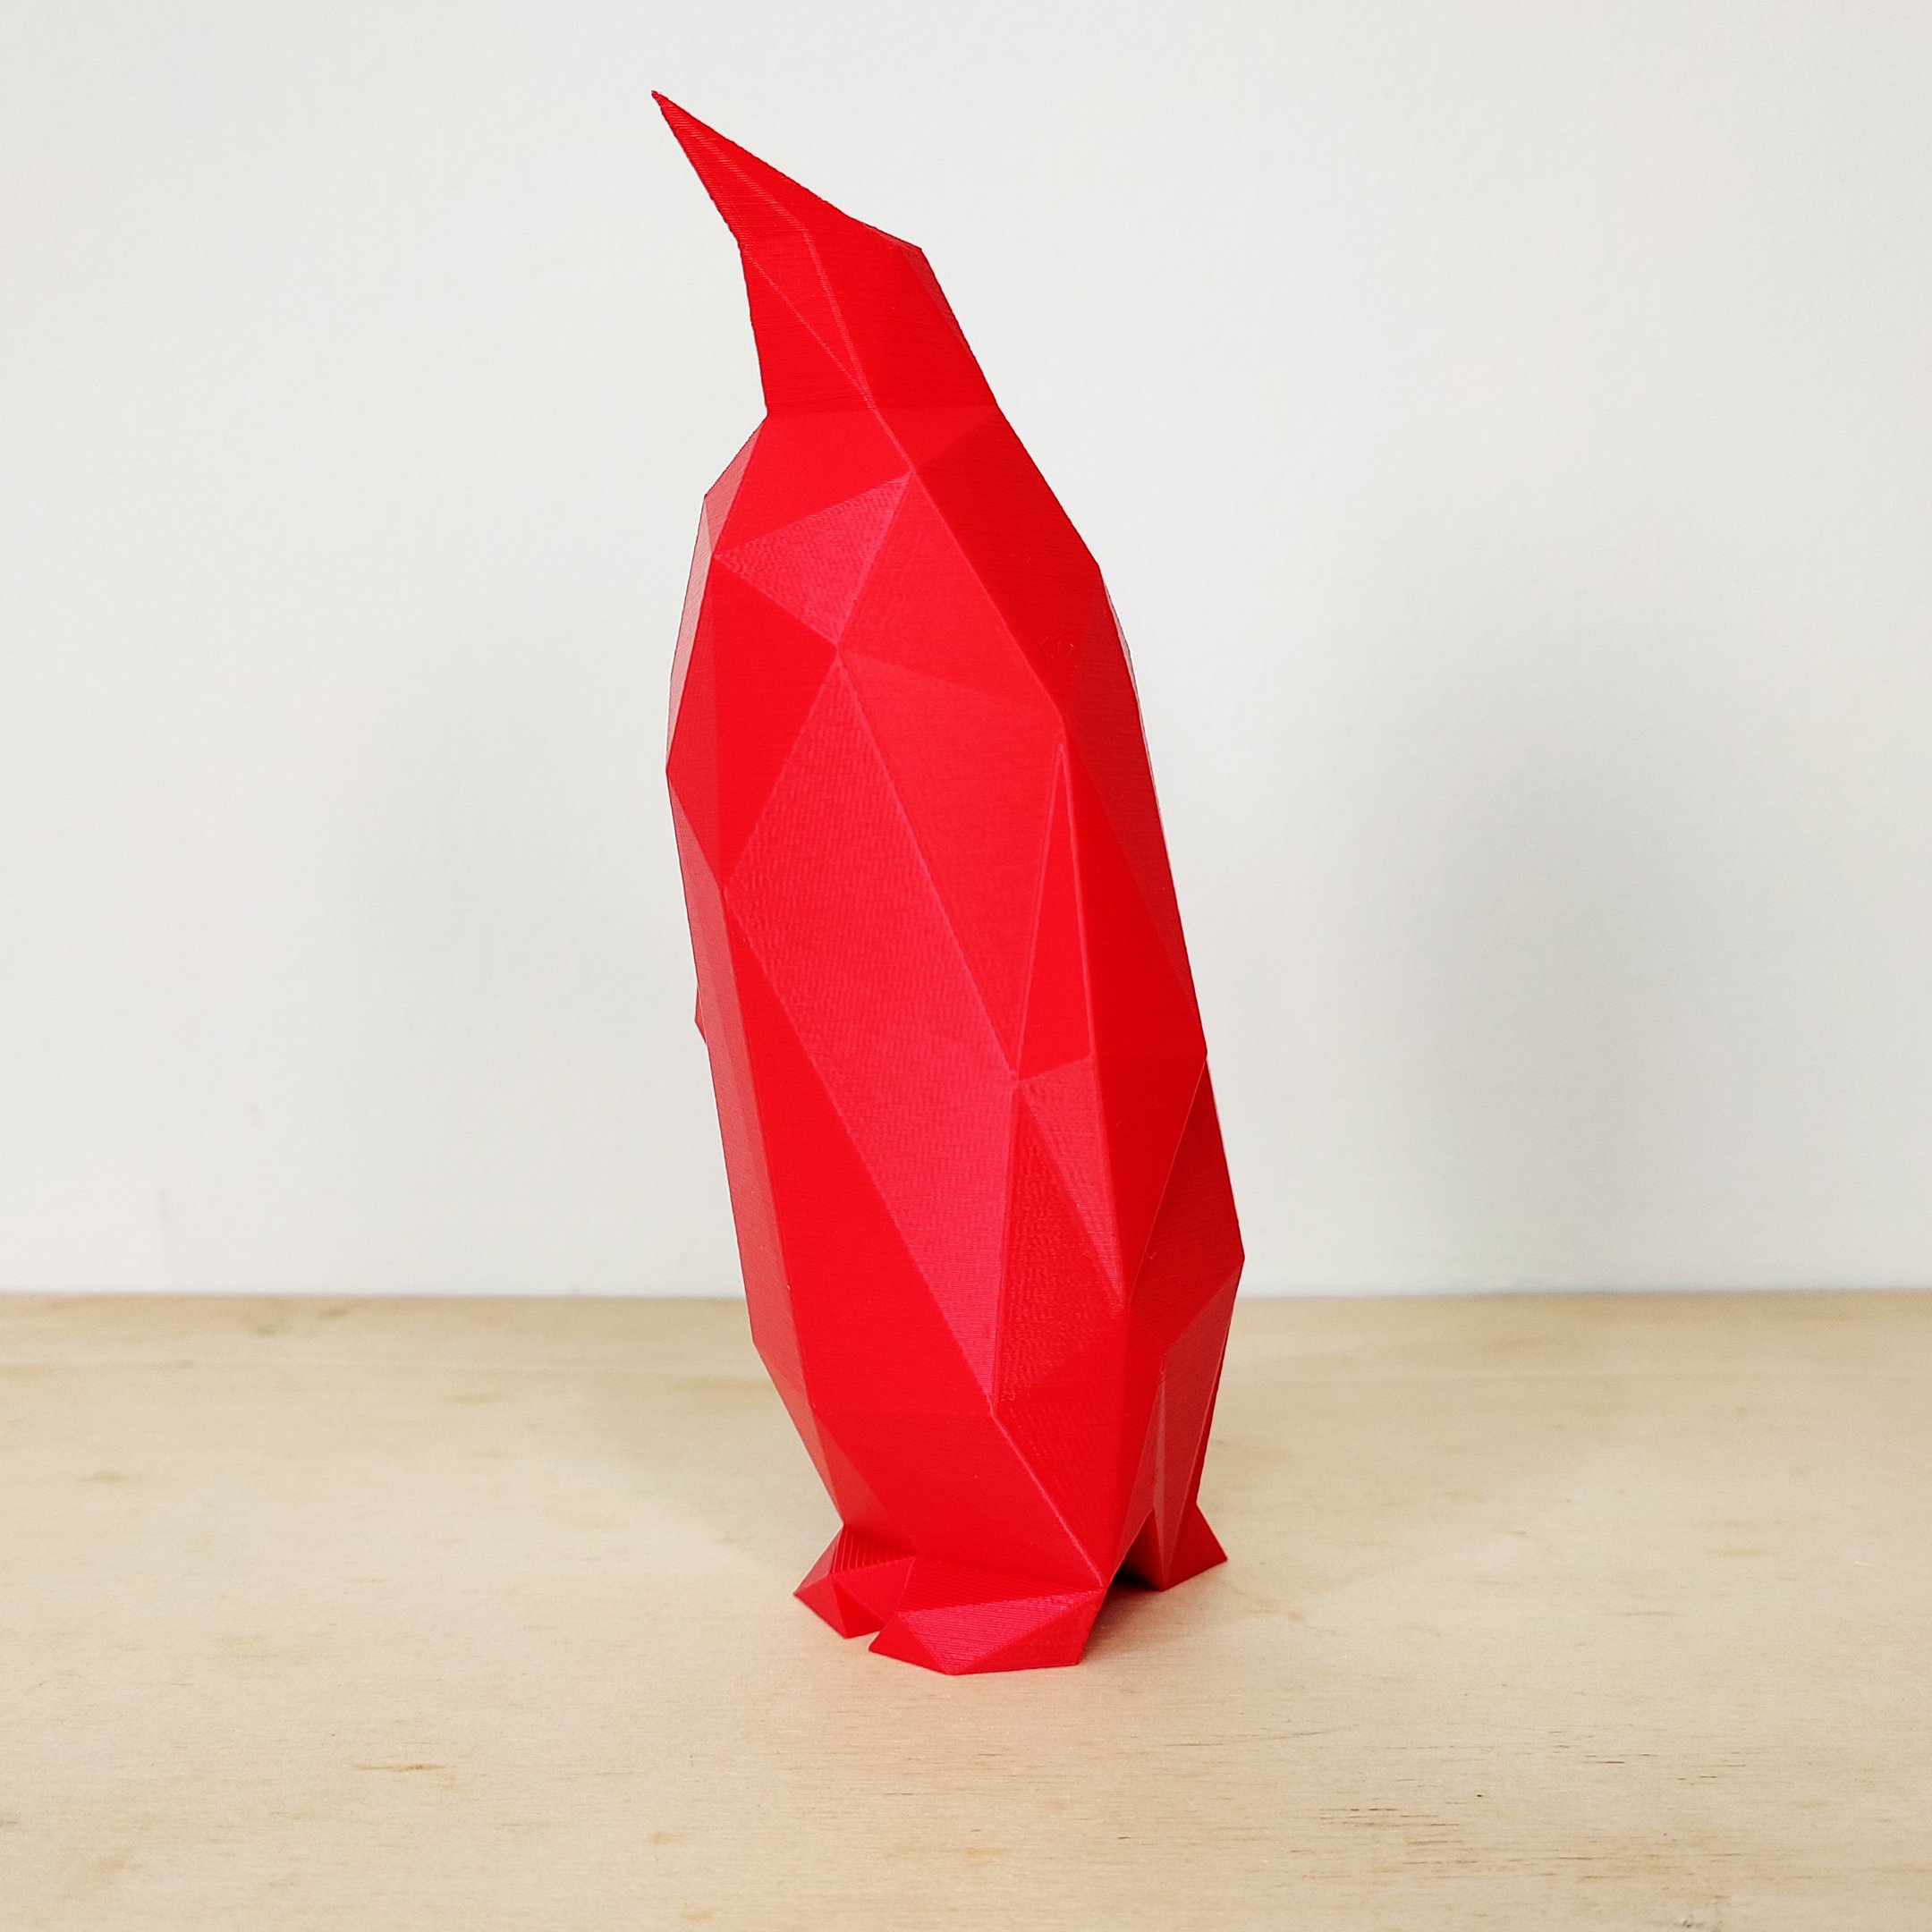 Pinguim Decorativo - 15 Cm De Altura - Toque 3D:Vermelho - 1